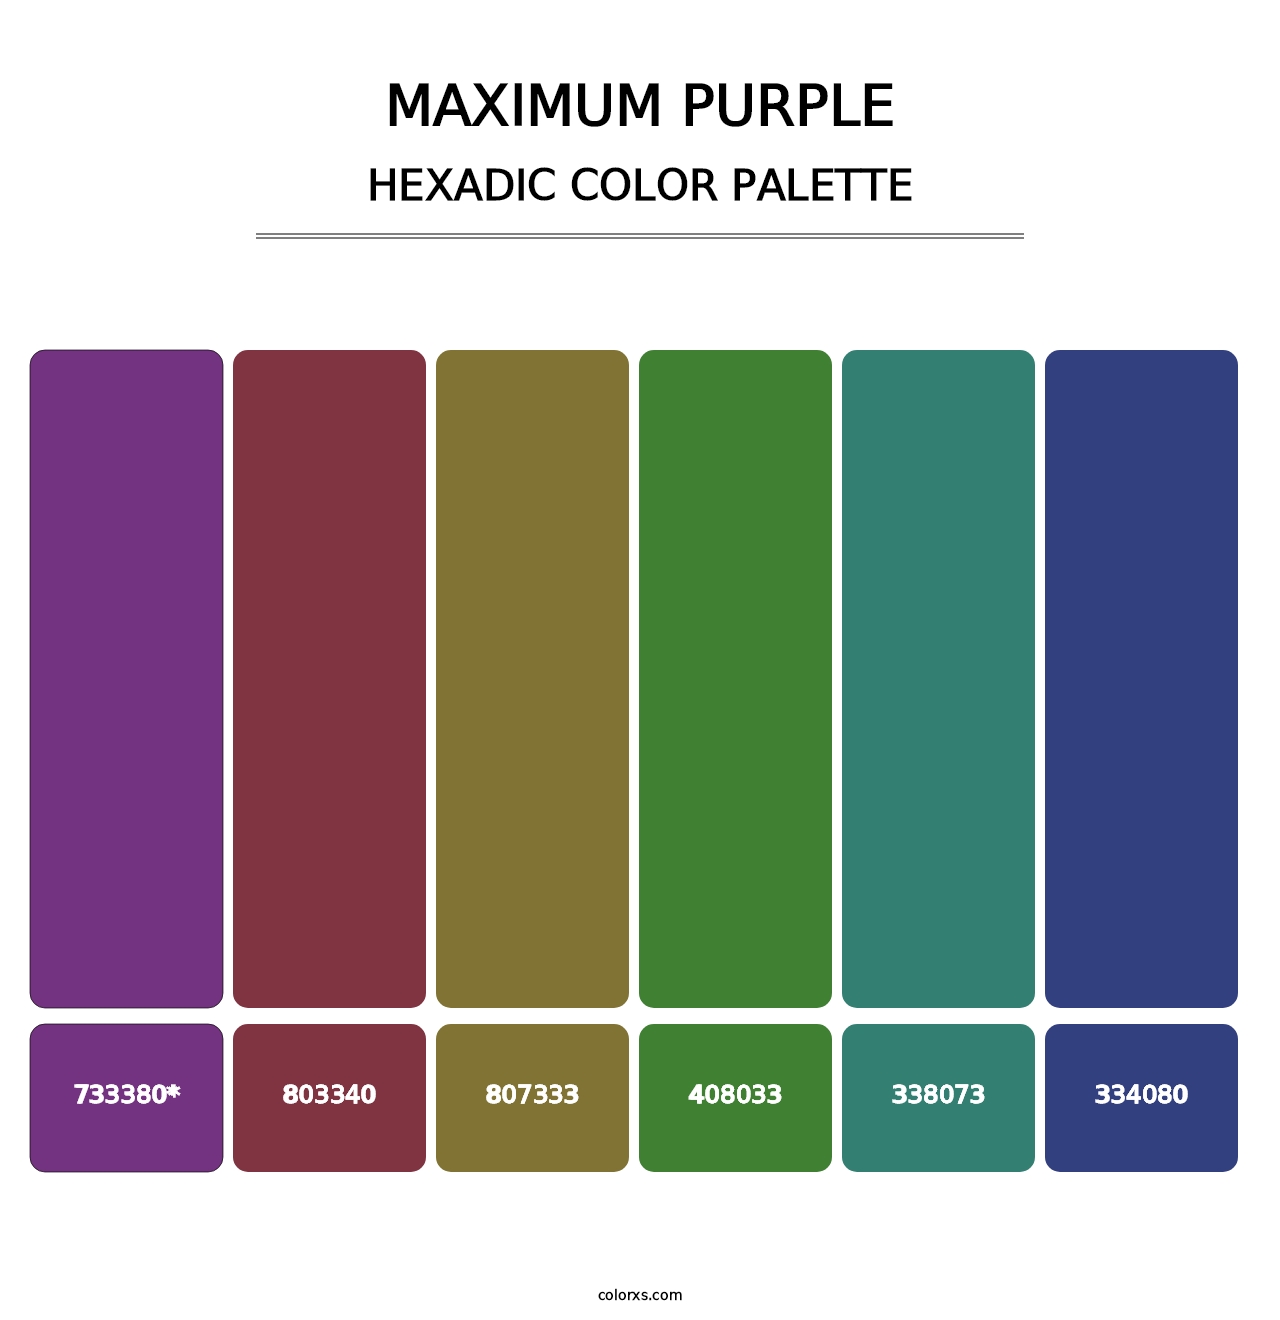 Maximum Purple - Hexadic Color Palette